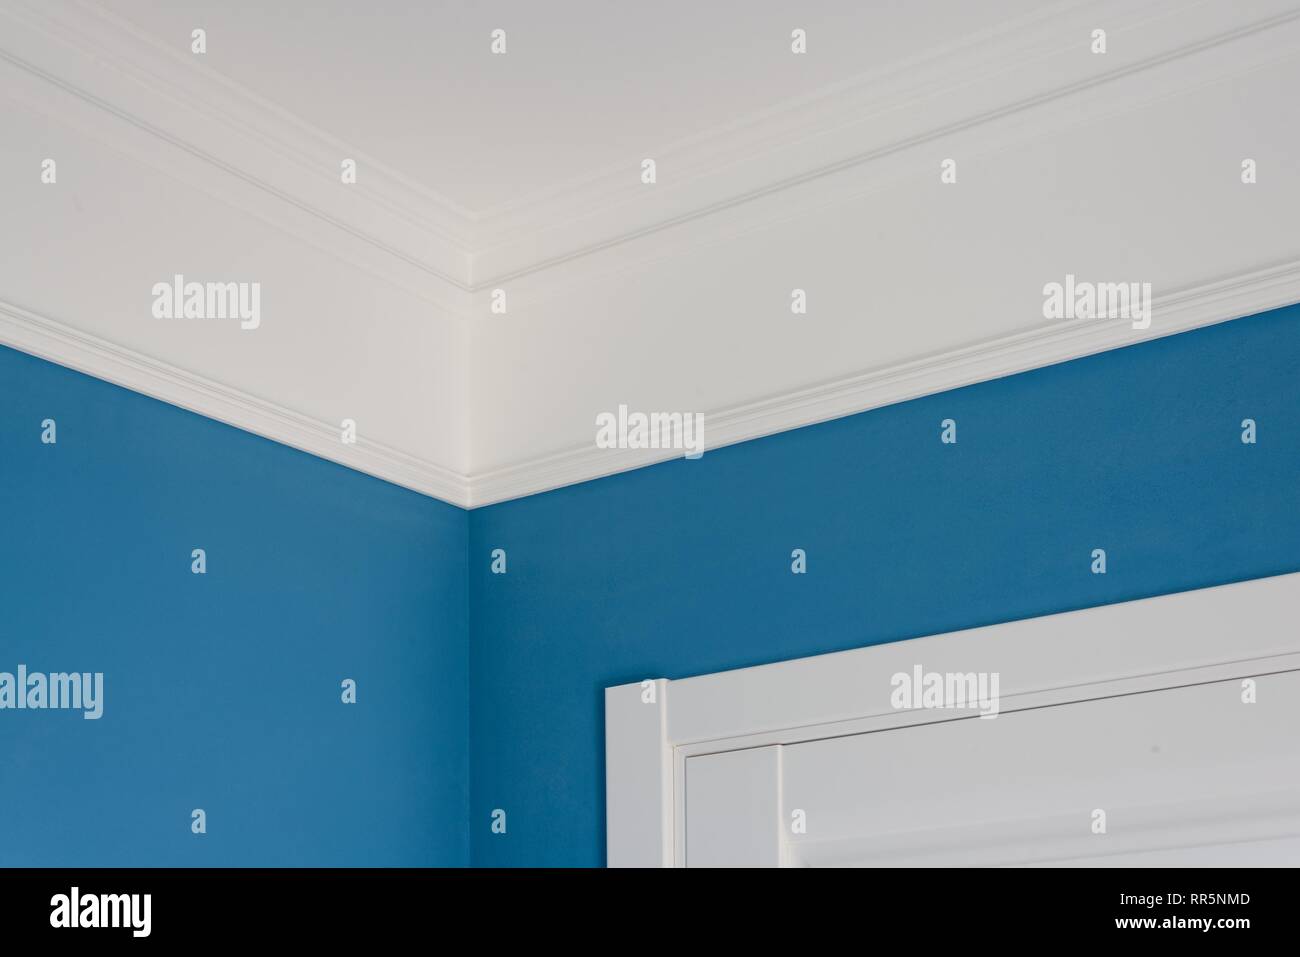 Detalles en el interior. Las molduras del techo, paredes pintadas de azul,  blanco puerta Fotografía de stock - Alamy